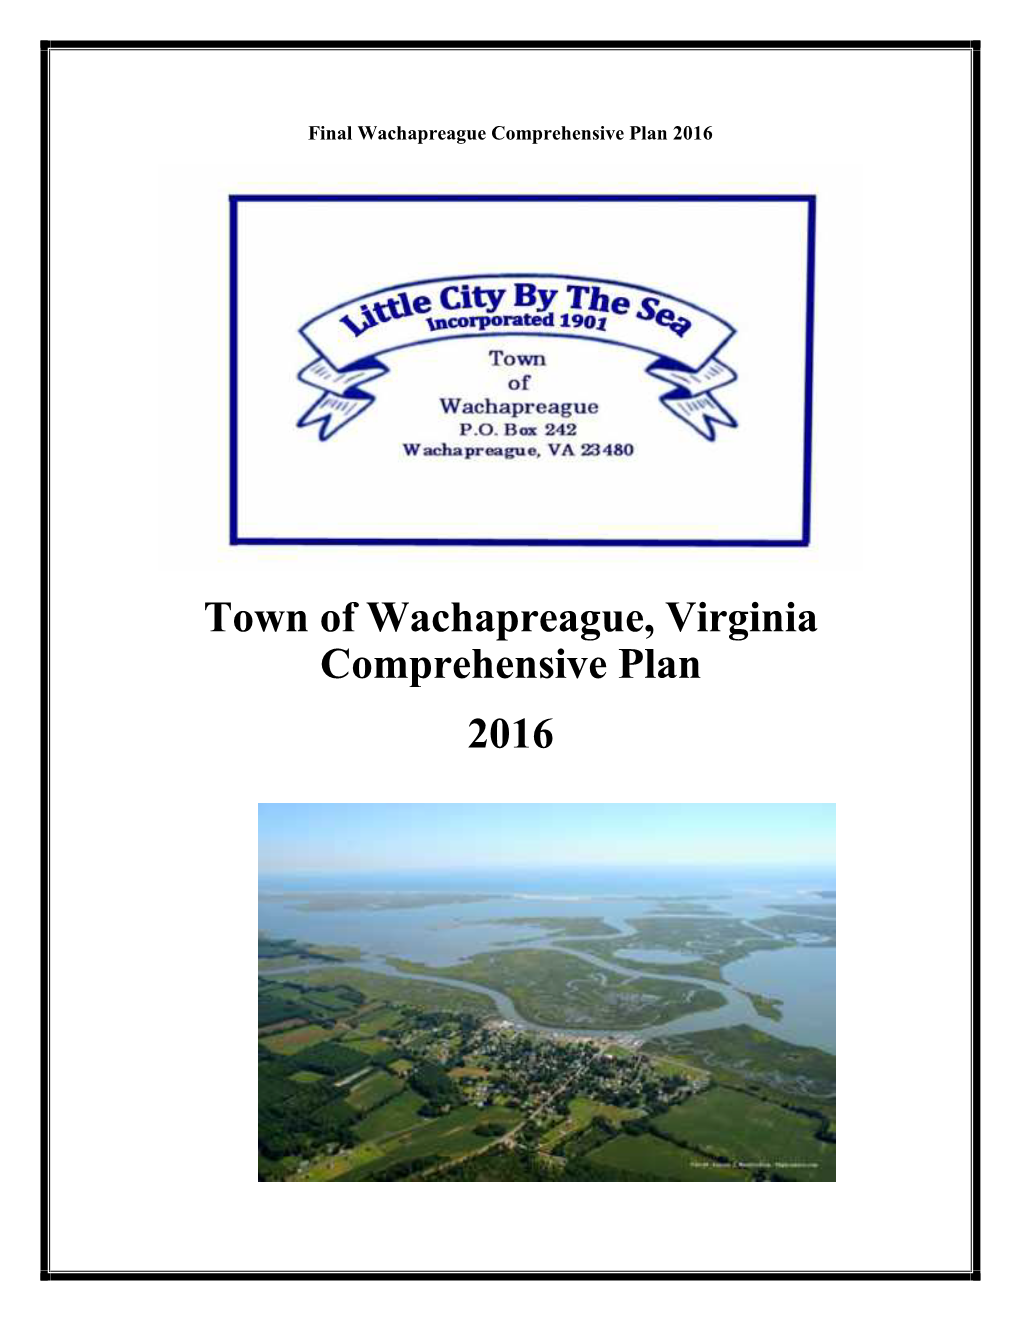 Town of Wachapreague, Virginia Comprehensive Plan 2016 Final Wachapreague Comprehensive Plan 2016 Preface